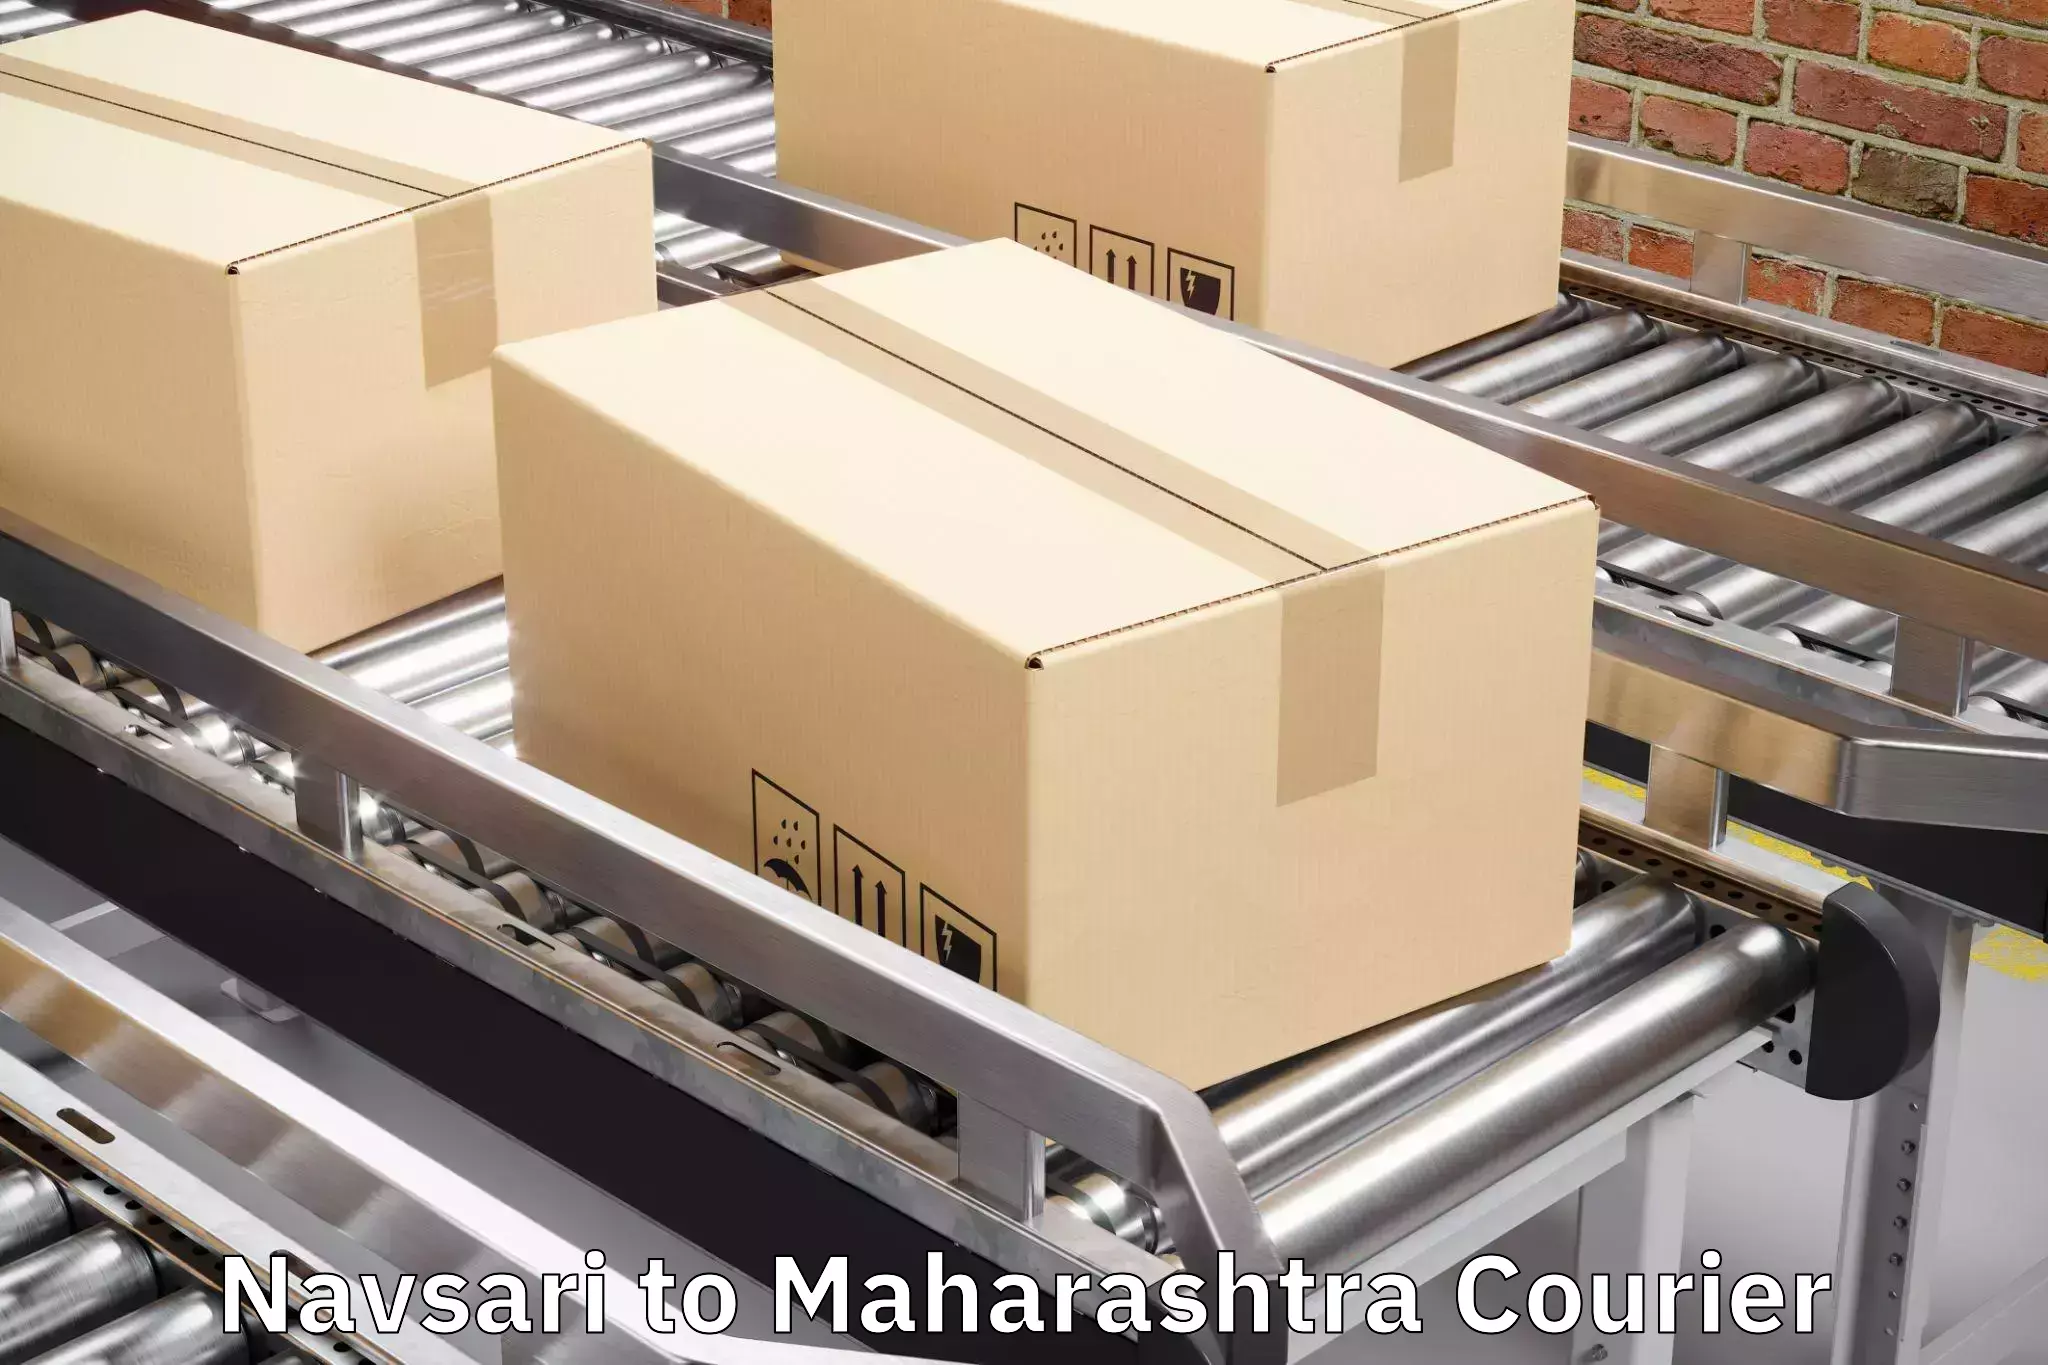 Luggage delivery providers Navsari to Gangapur Aurangabad